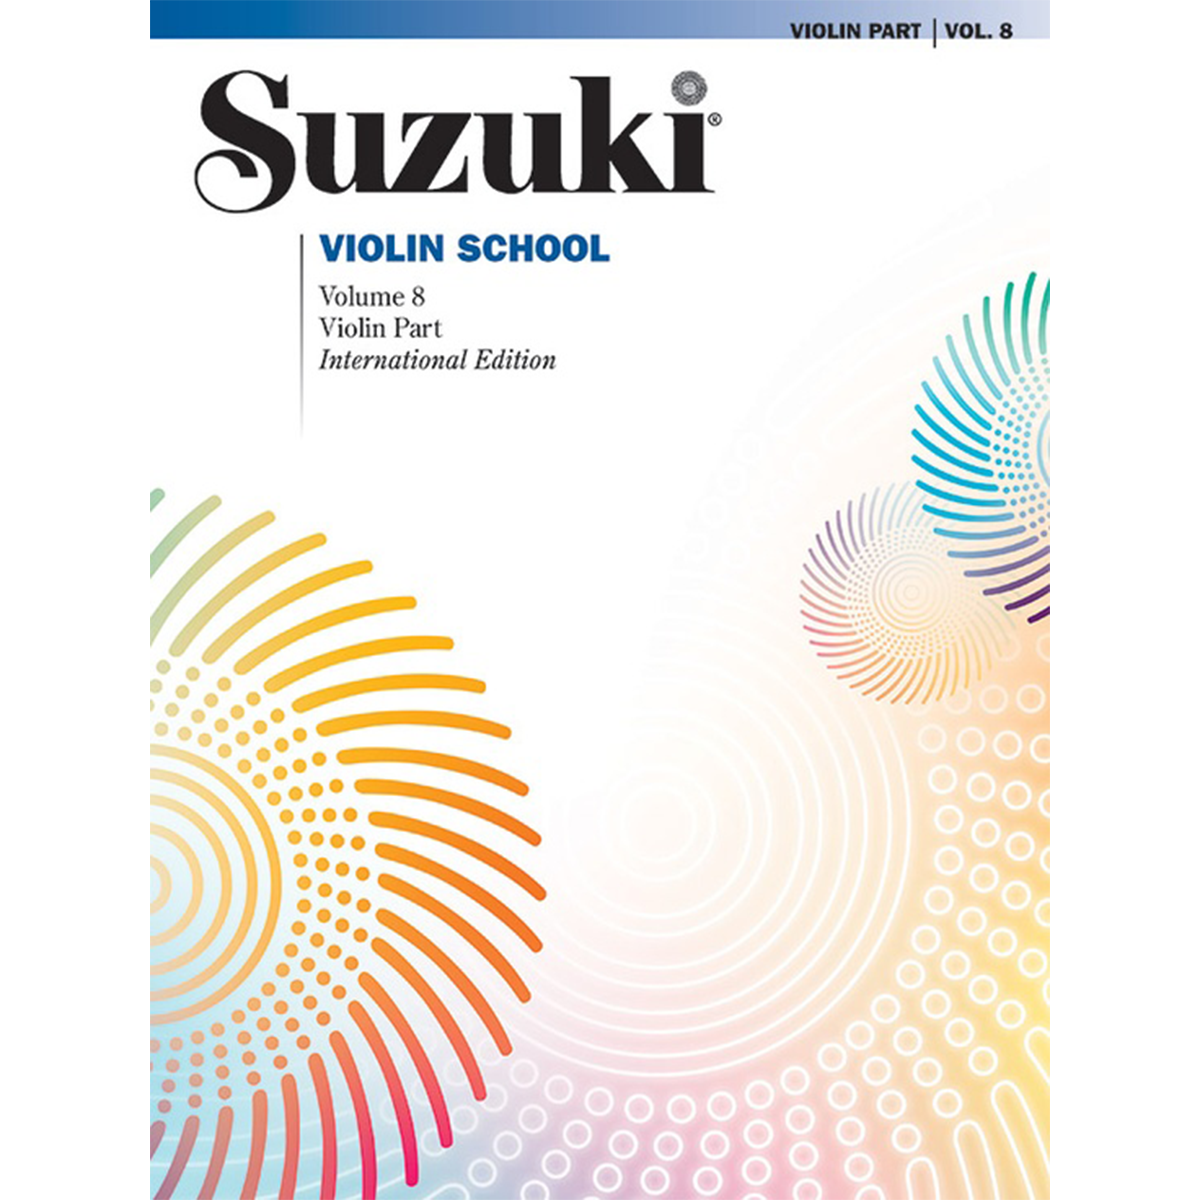 Suzuki Violin School: Violin Part, Vol. 8 in action